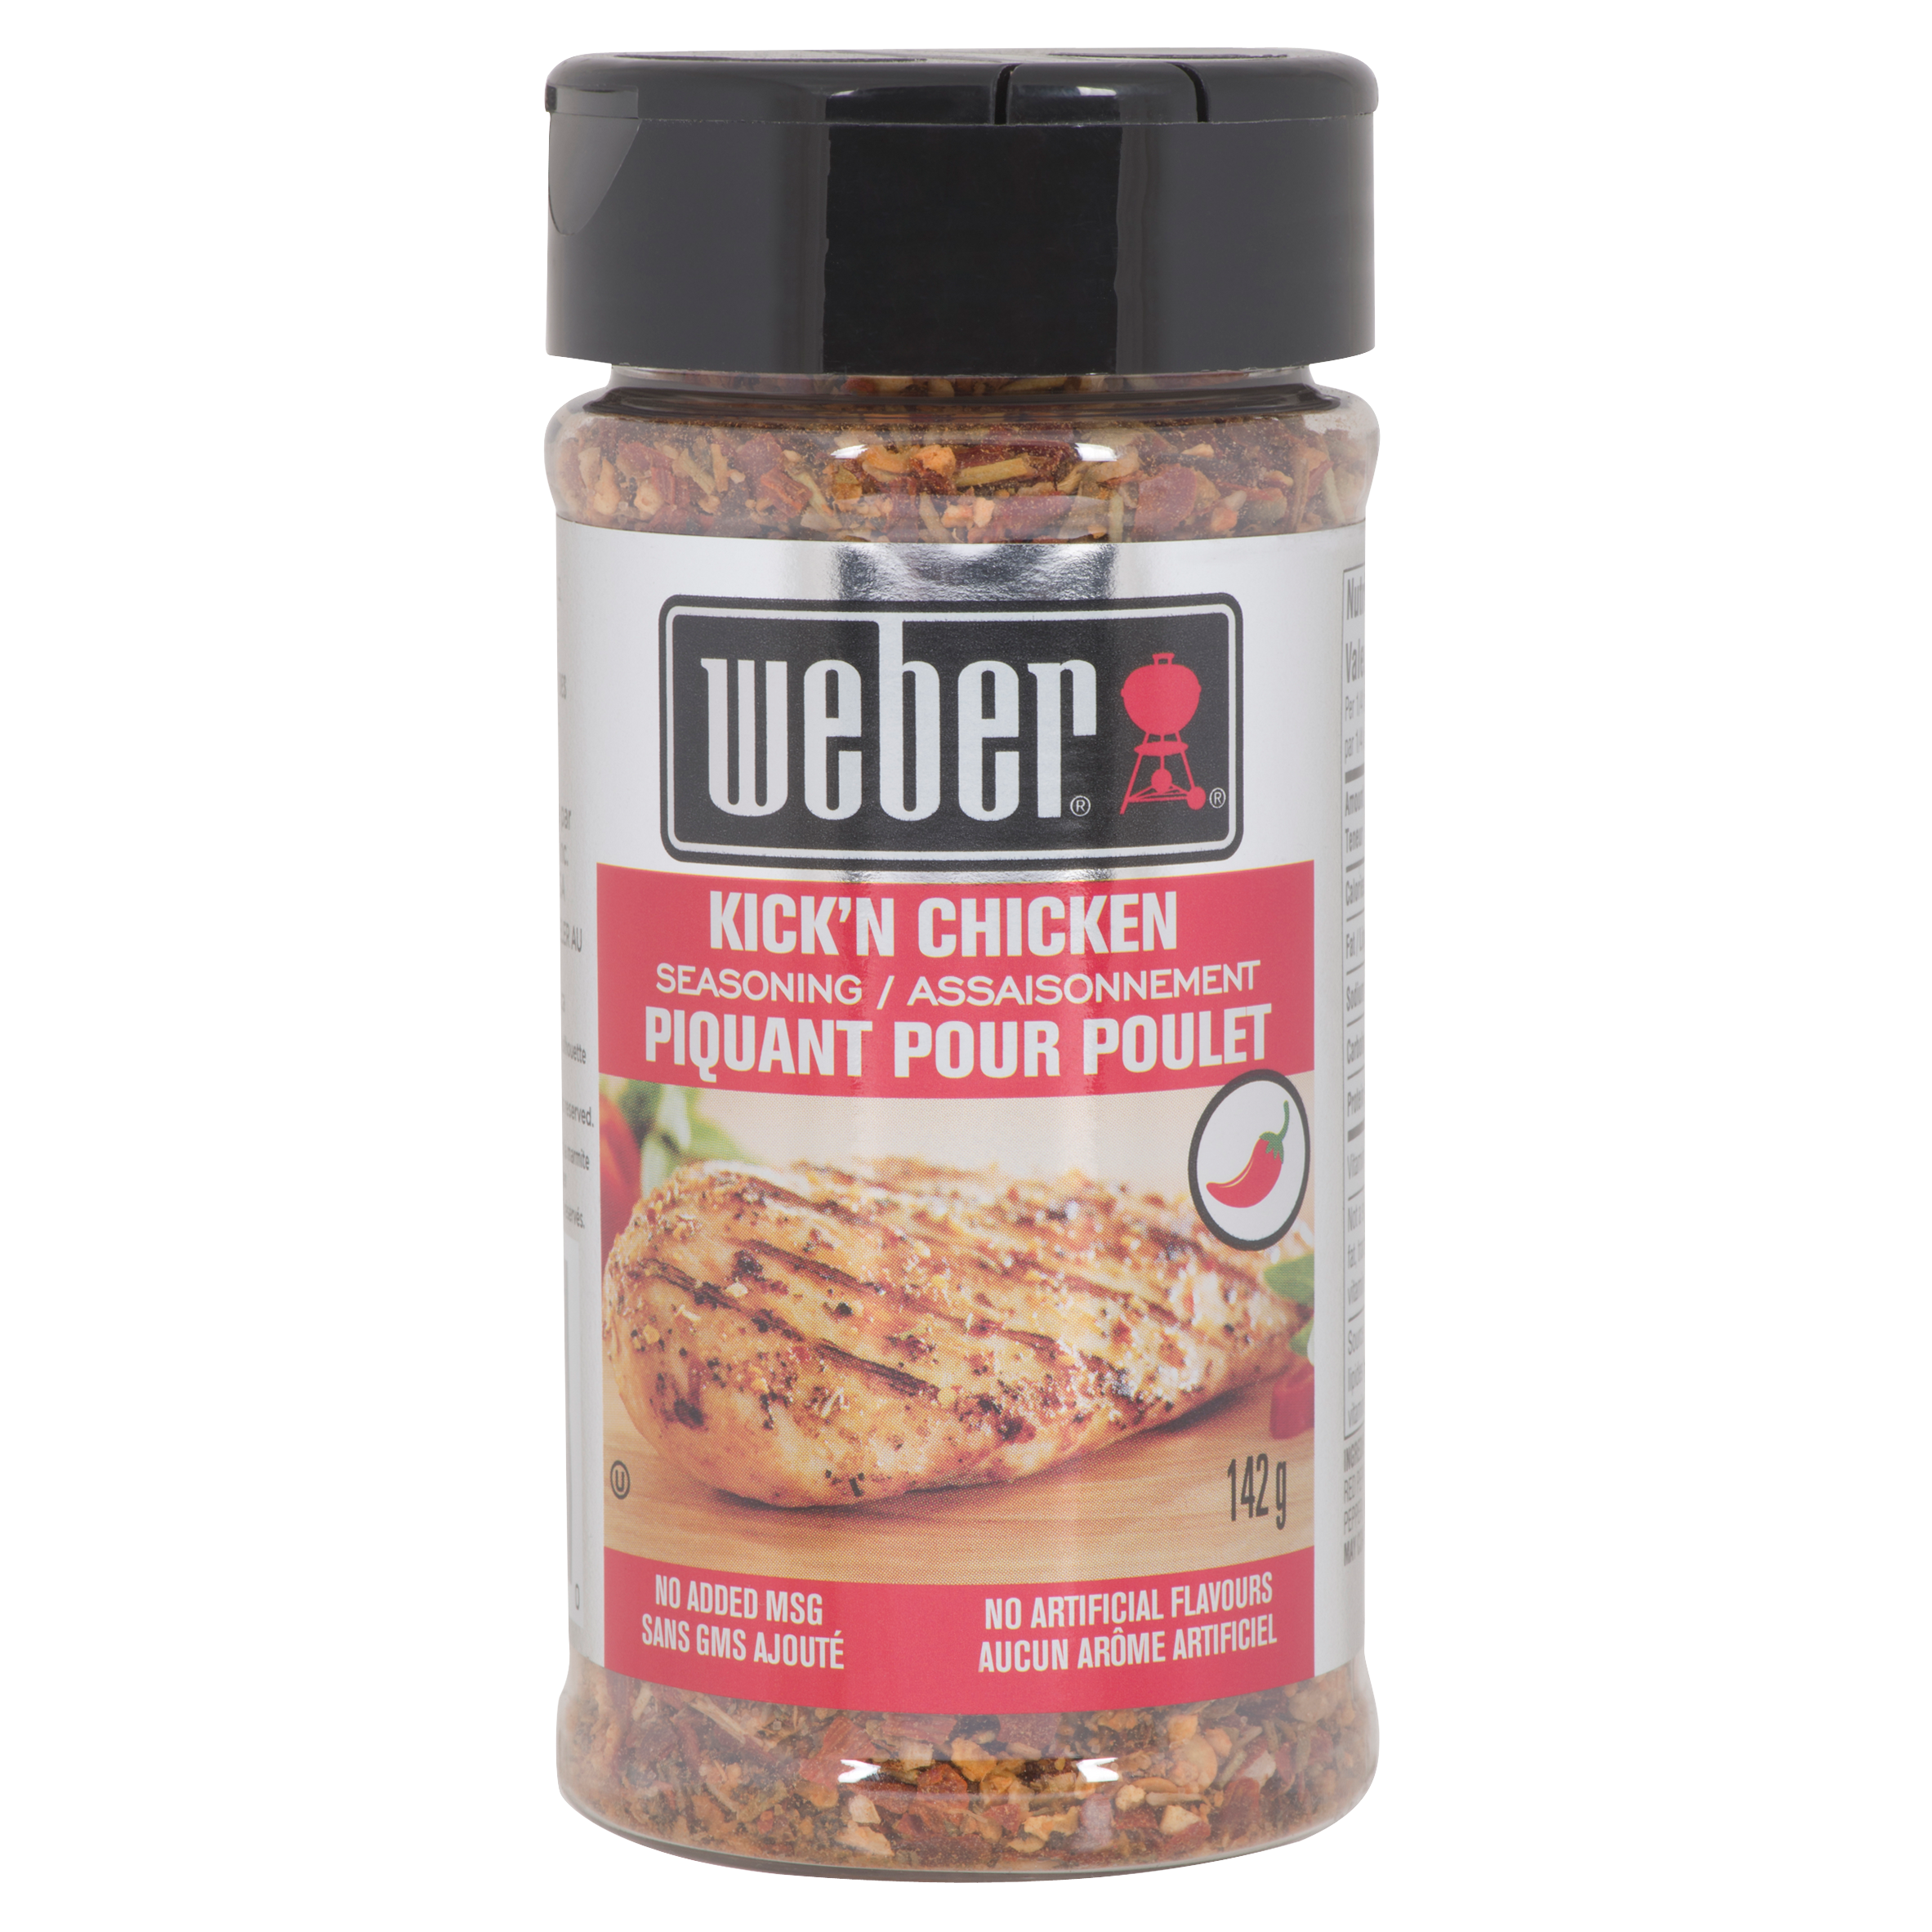 Weber Kick'n Chicken Seasoning - Weber Seasonings - Chicken Seasoning